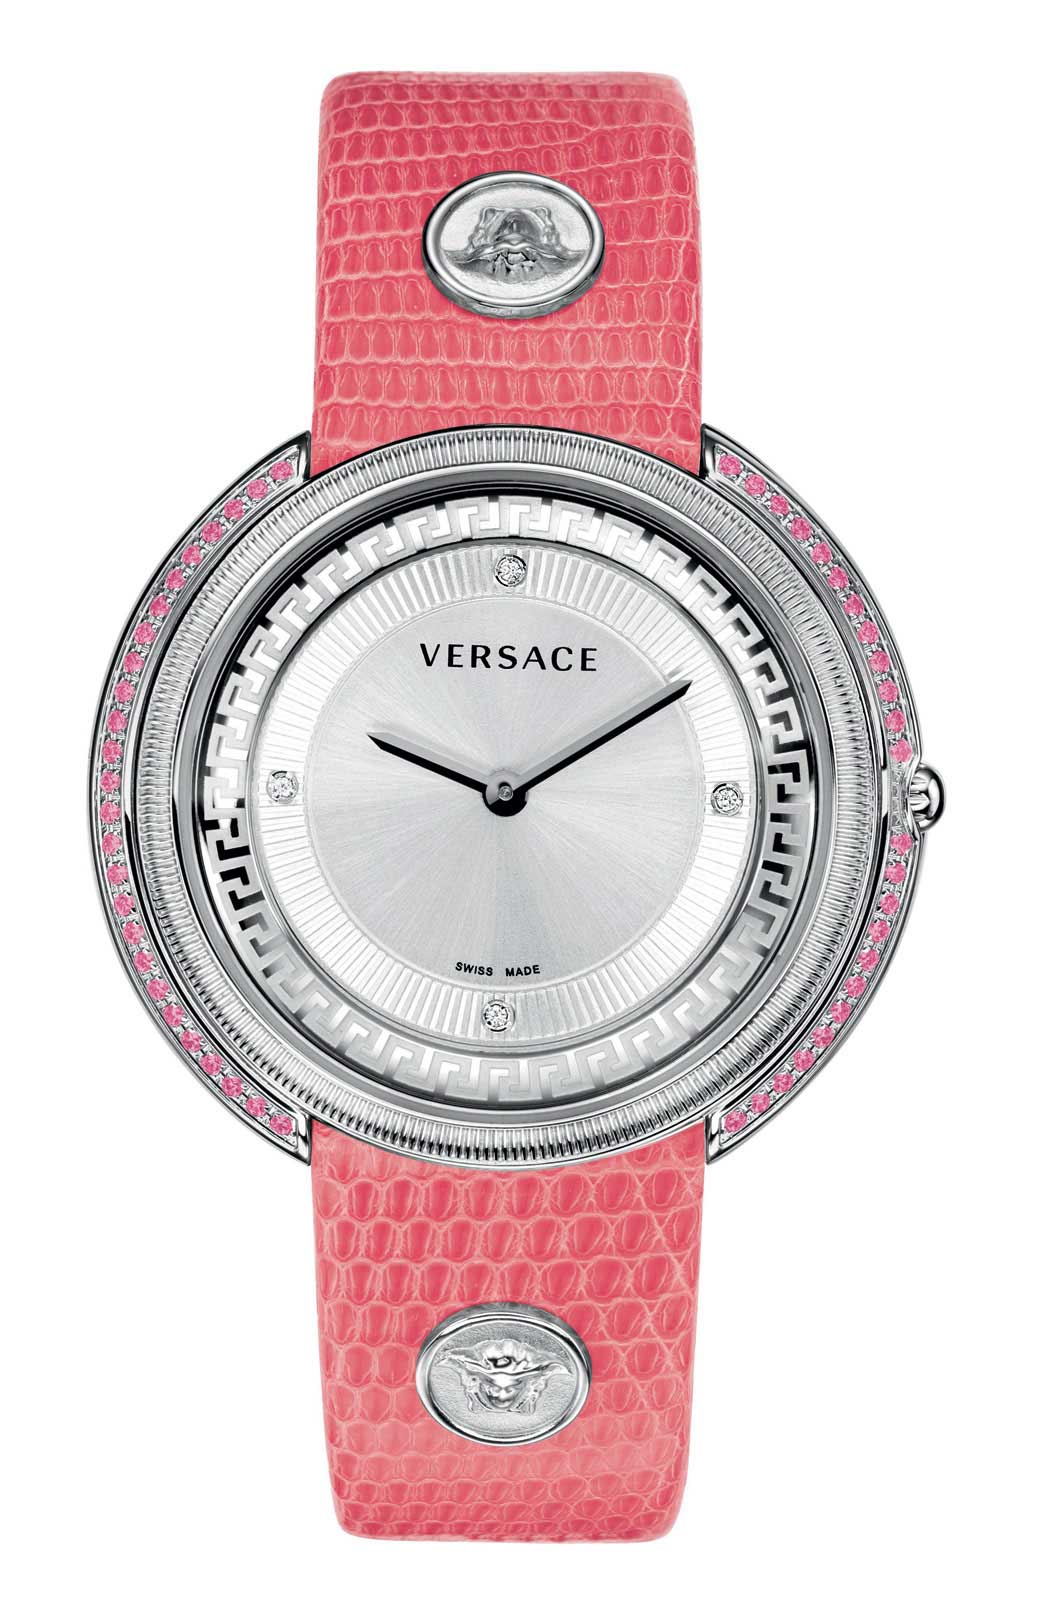 Versace QUARTZ watch 762 STEEL PINK LIZARD